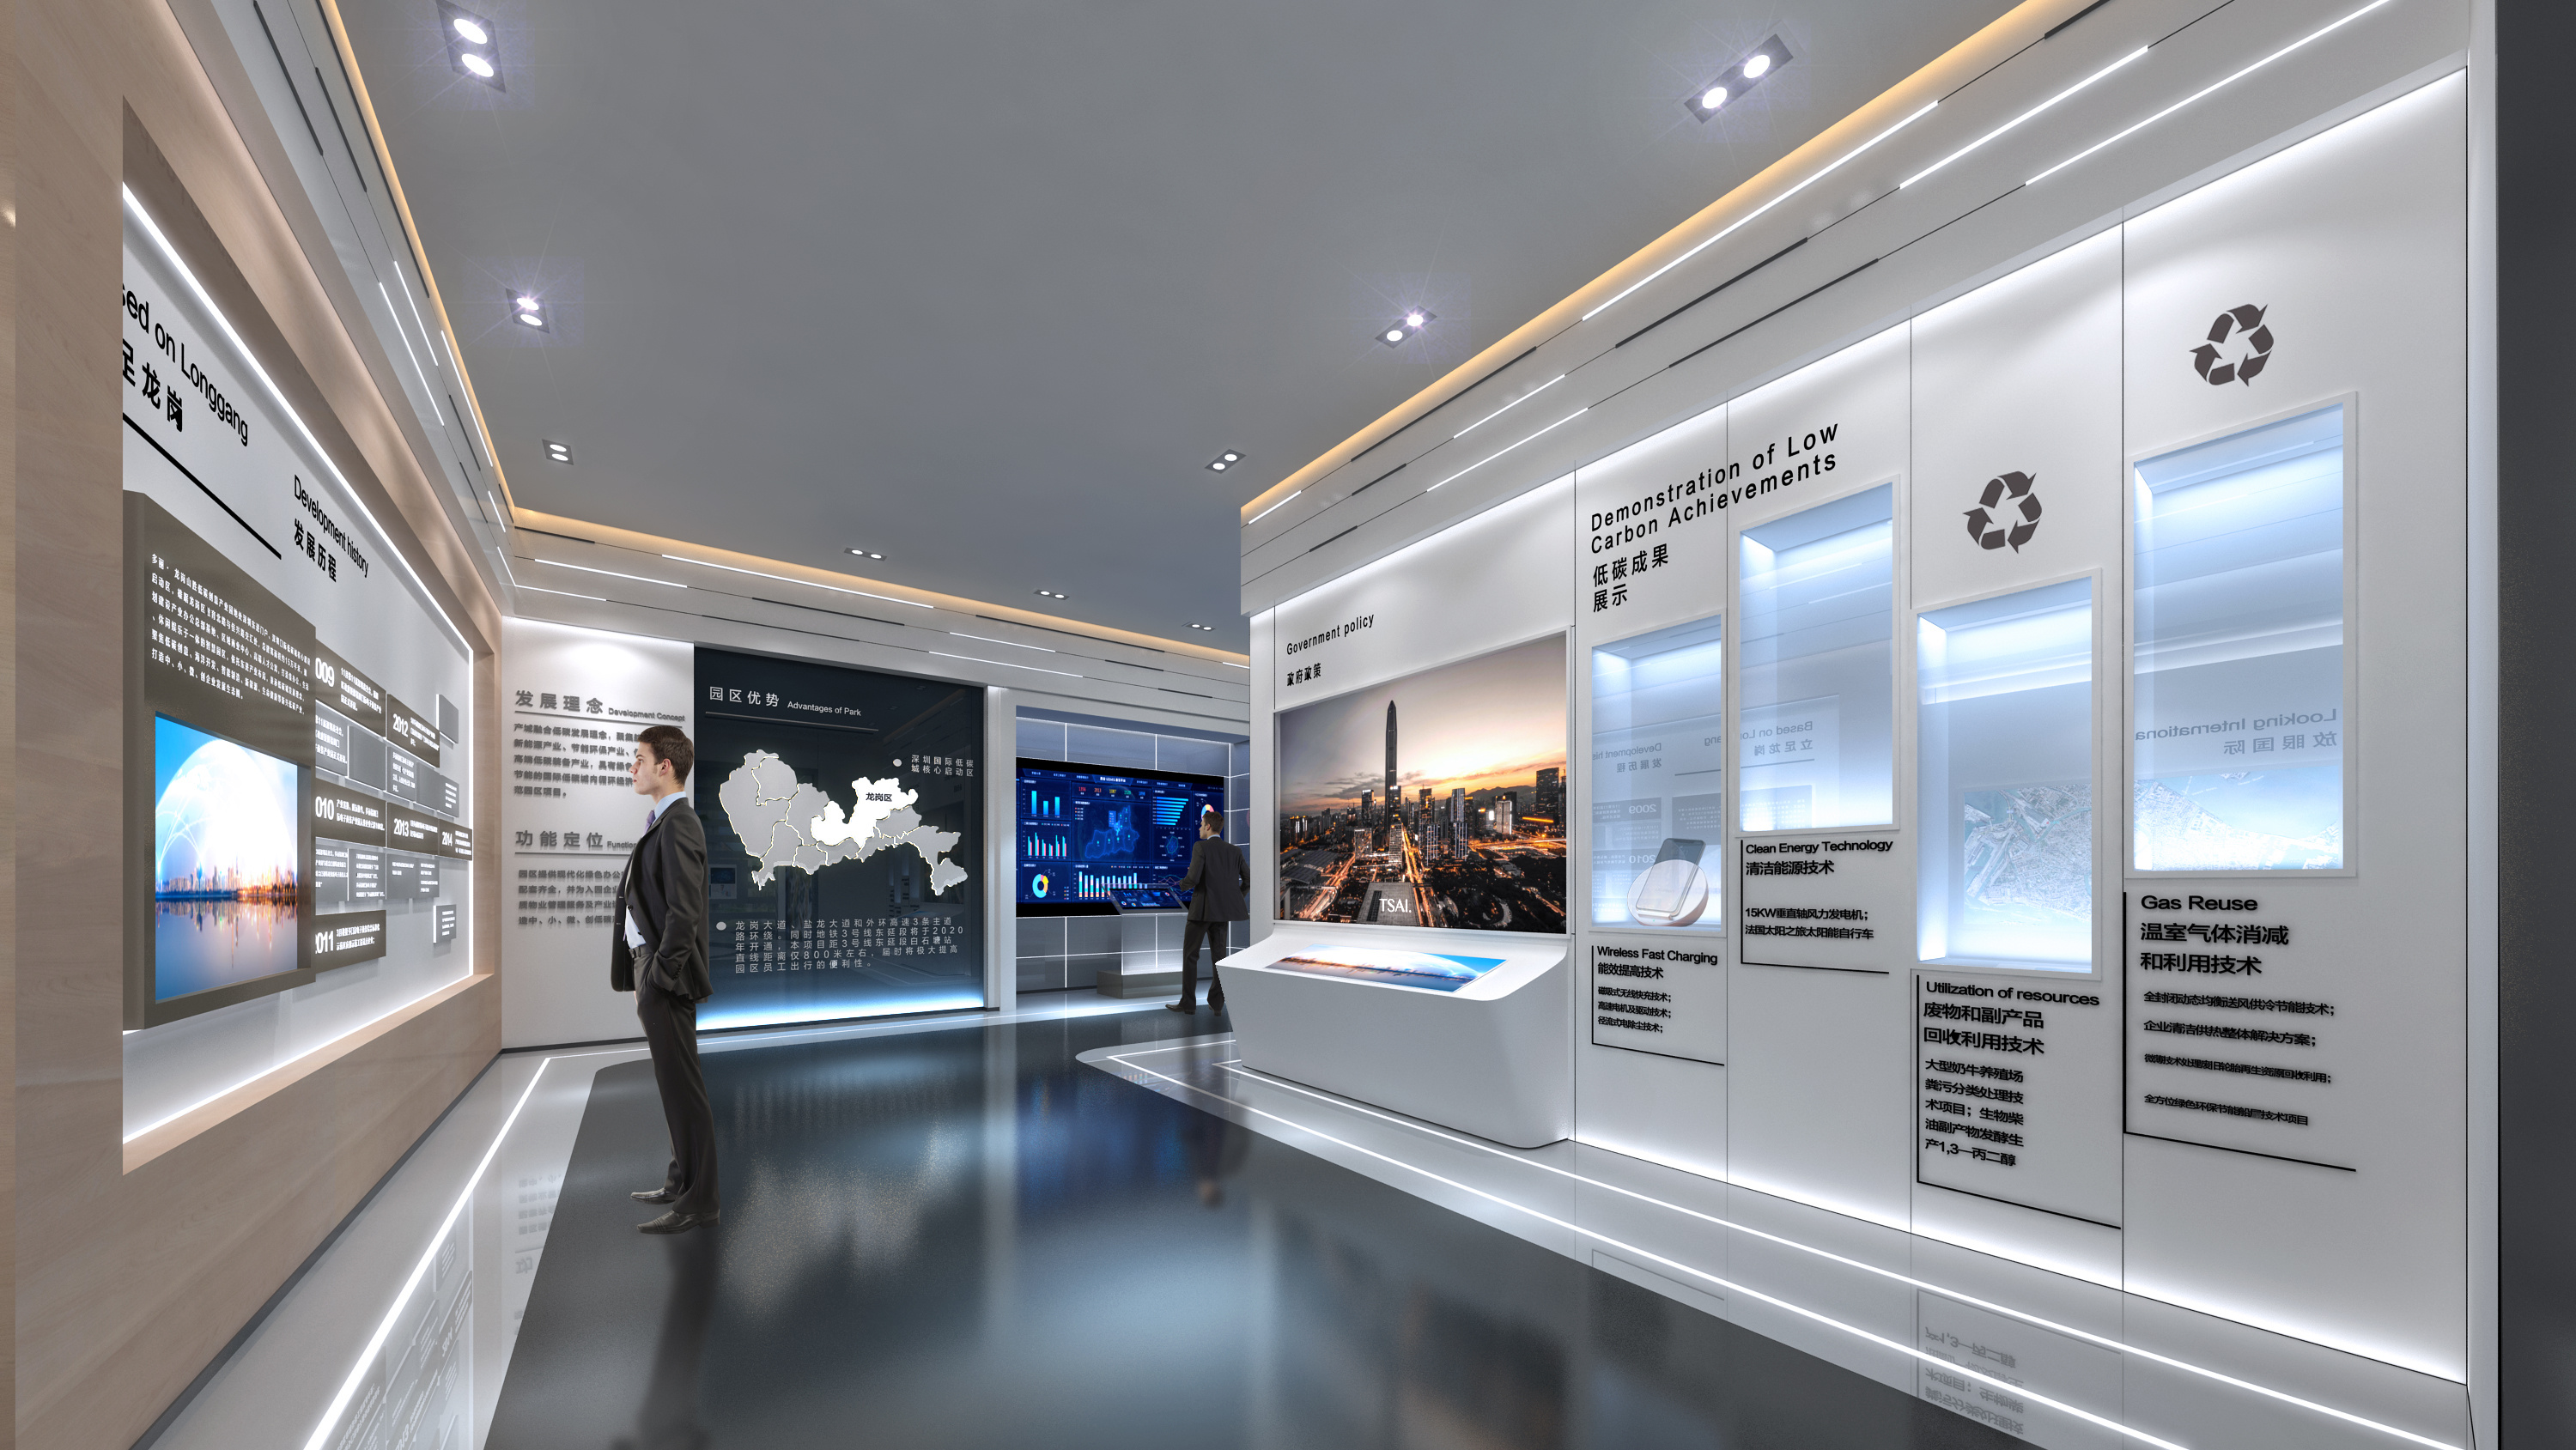 图片展示一位站立的人在现代设计的展览厅内参观，四周有展示屏和信息板，整体色调现代且科技感强。